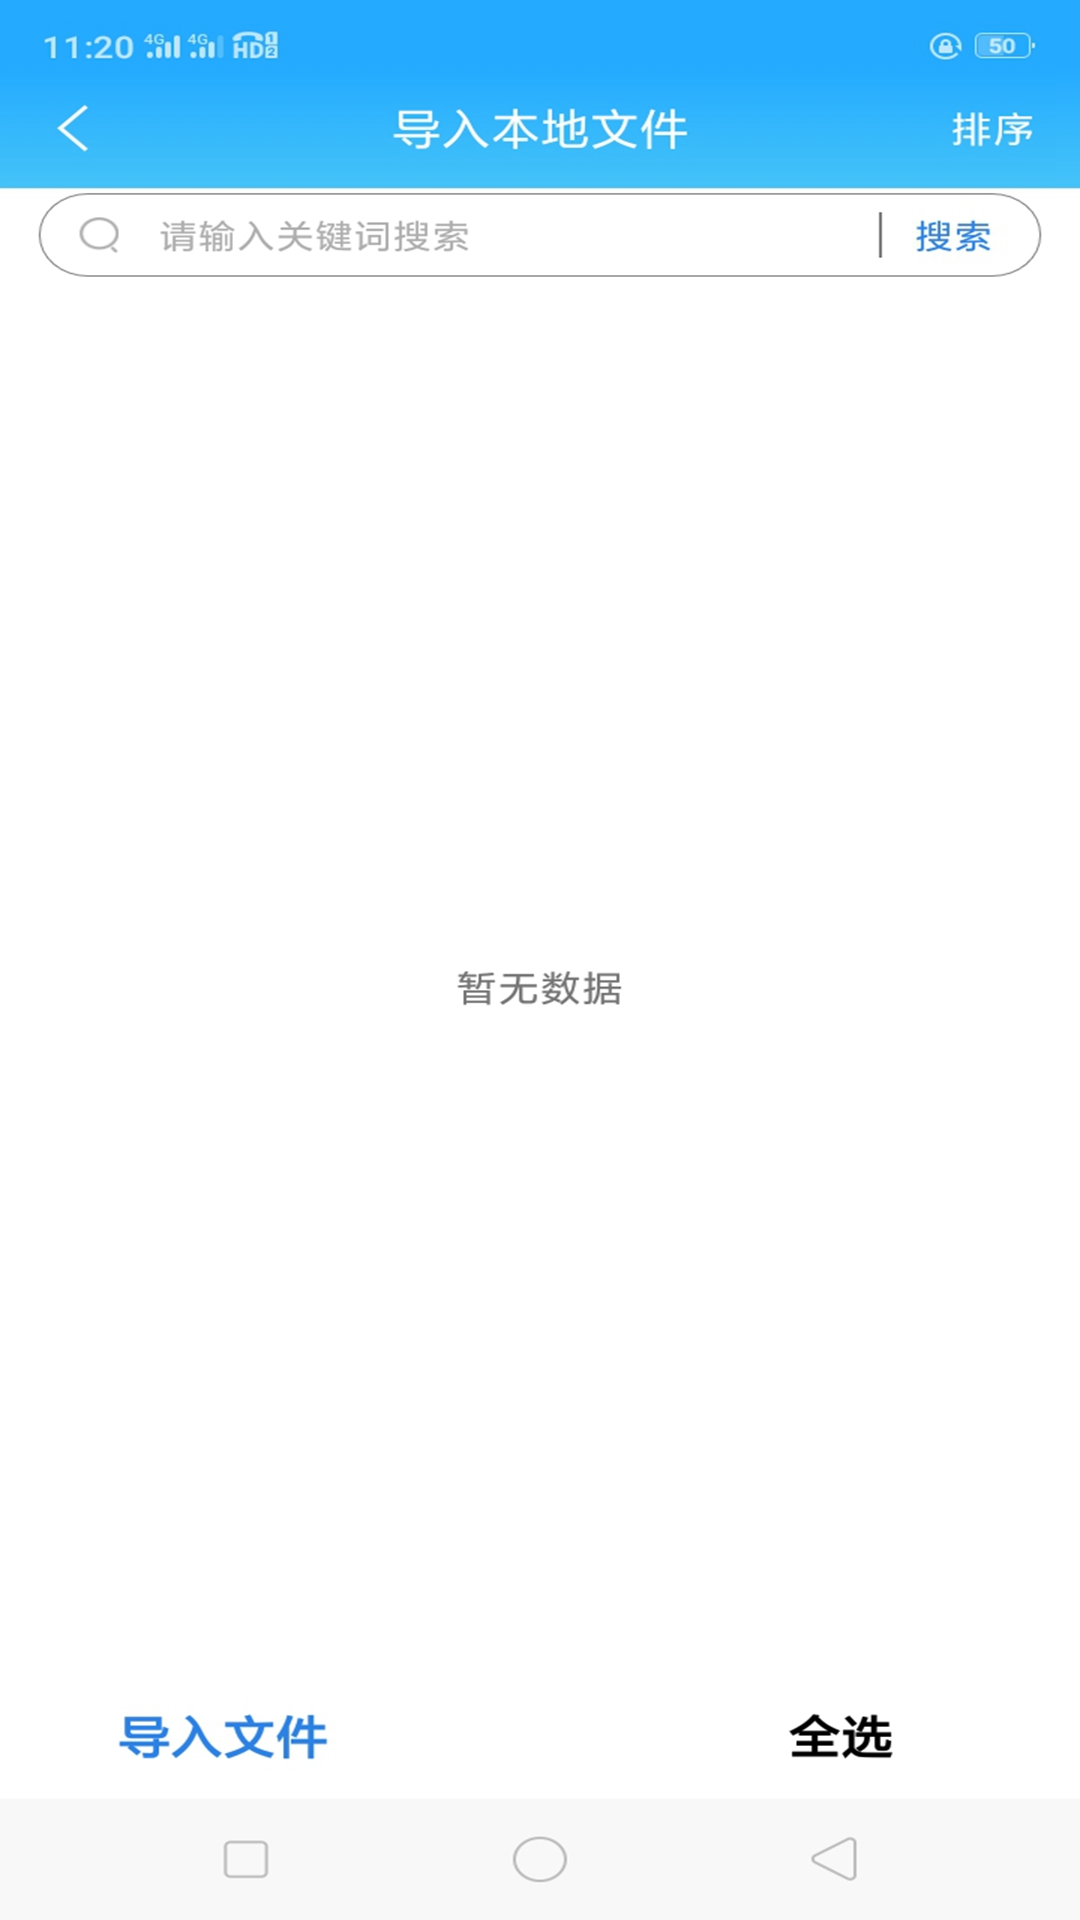 全本海棠小说阅读器 V1.0.4 免费版